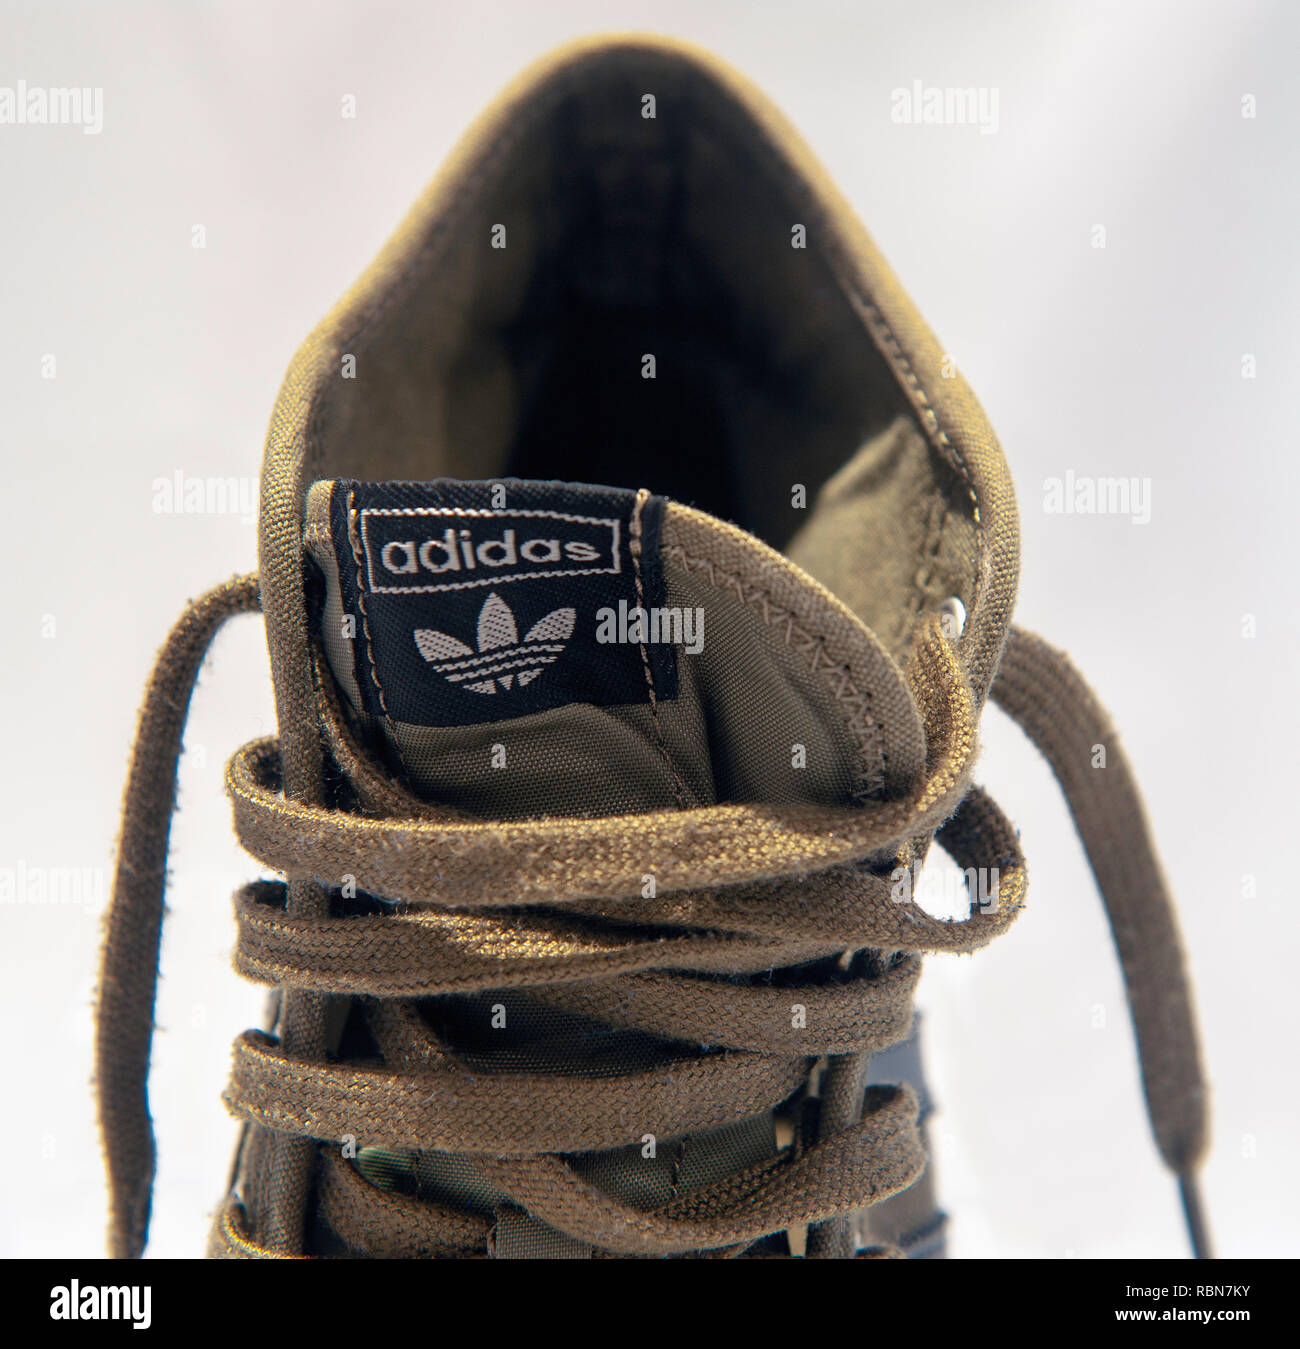 Zunge & Spitzen von einem Adidas boot Stockfoto